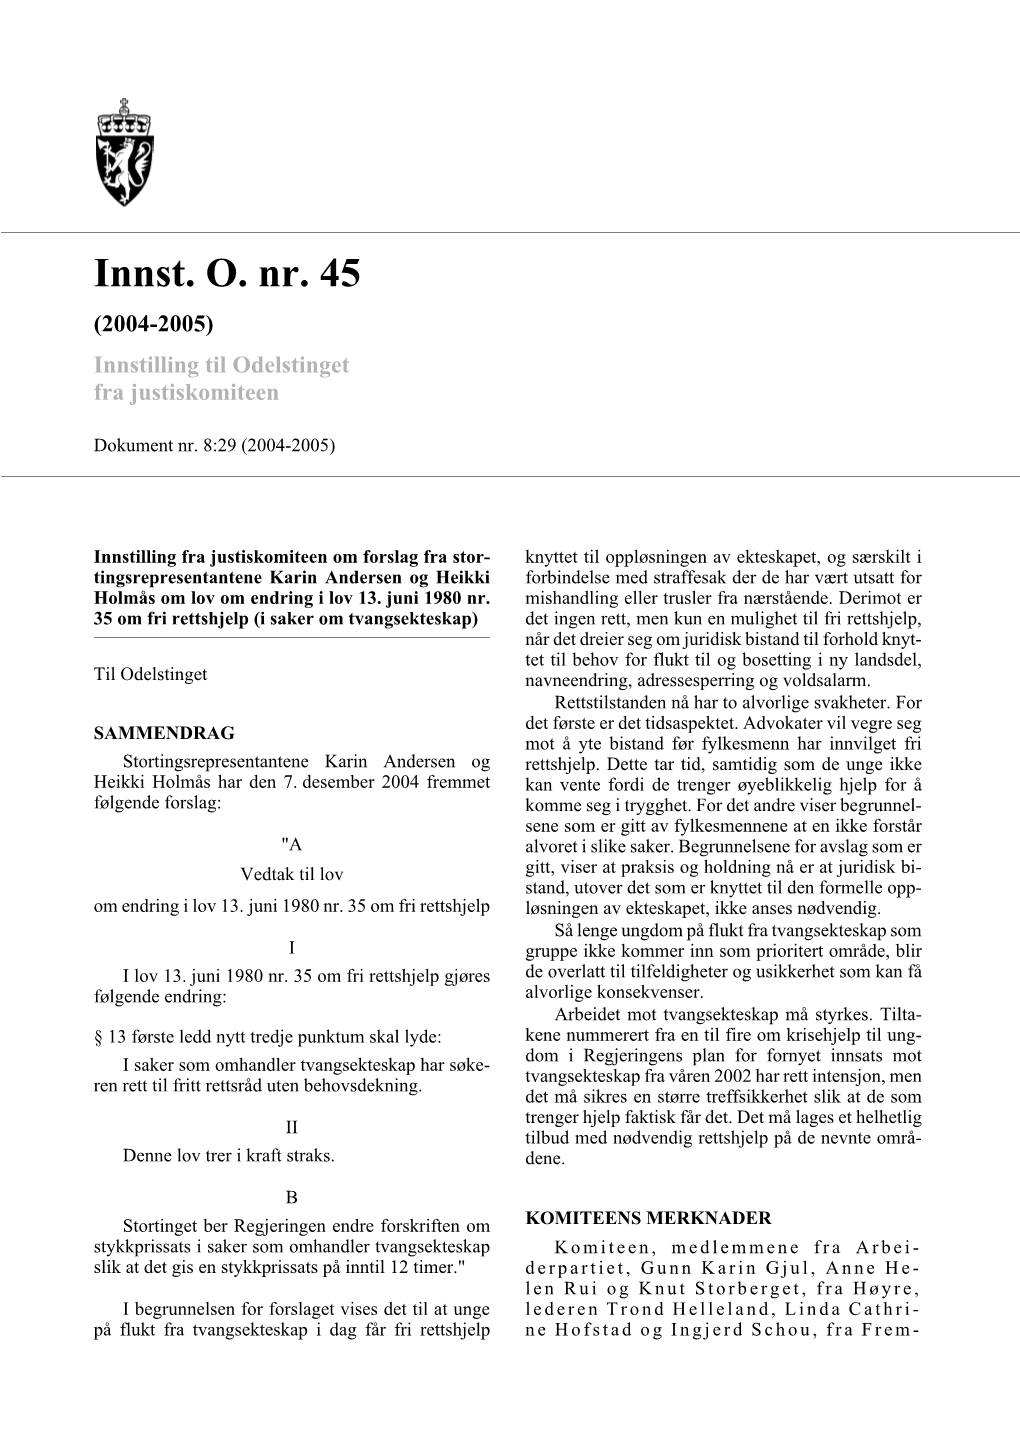 Innst. O. Nr. 45 (2004-2005) Innstilling Til Odelstinget Fra Justiskomiteen